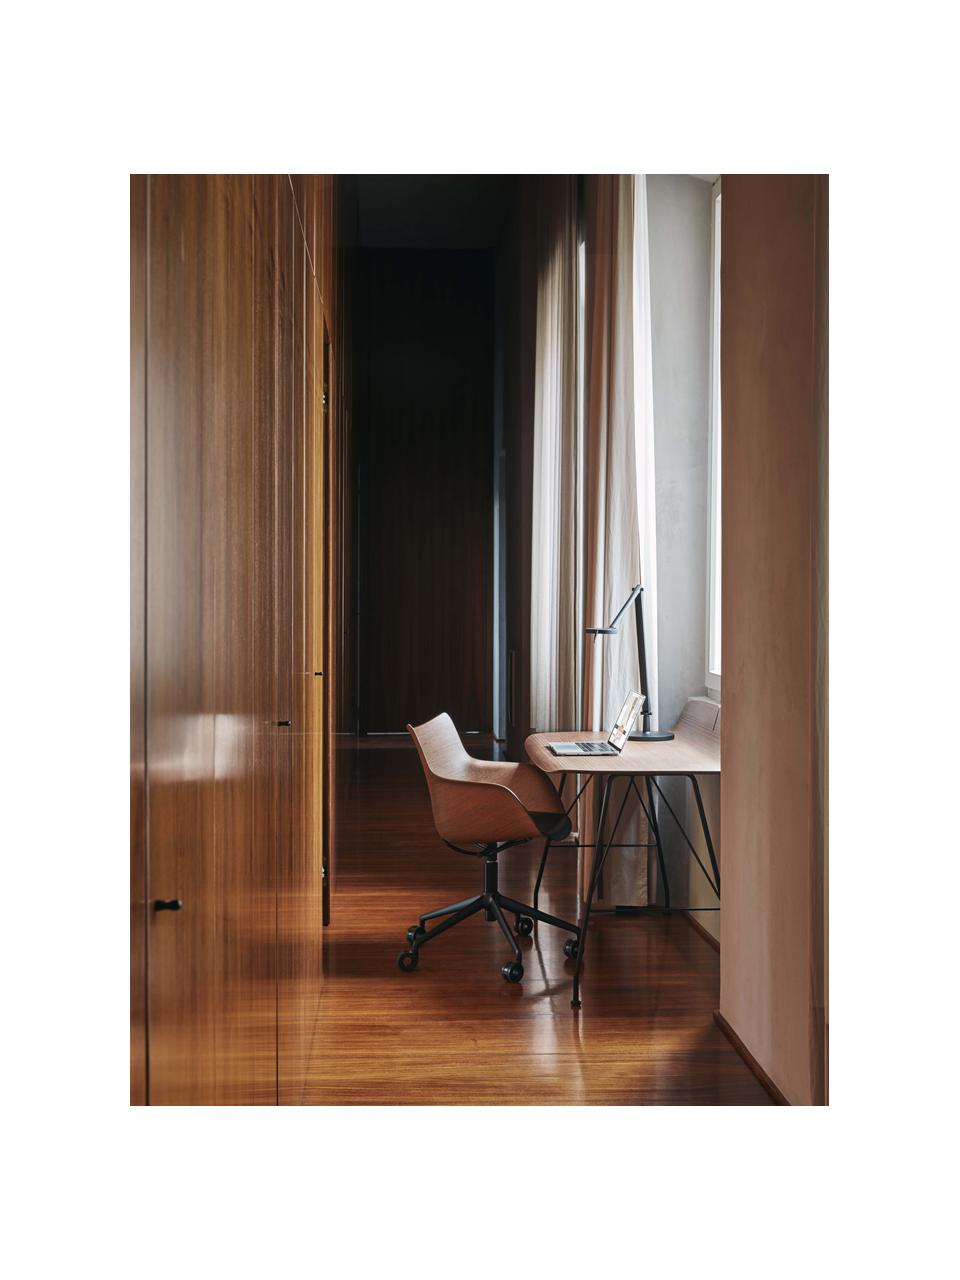 Krzesło biurowe z podłokietnikami Q/WOOD, Stelaż: stal lakierowana, Drewno naturalne, czarny, S 62 x G 60 cm